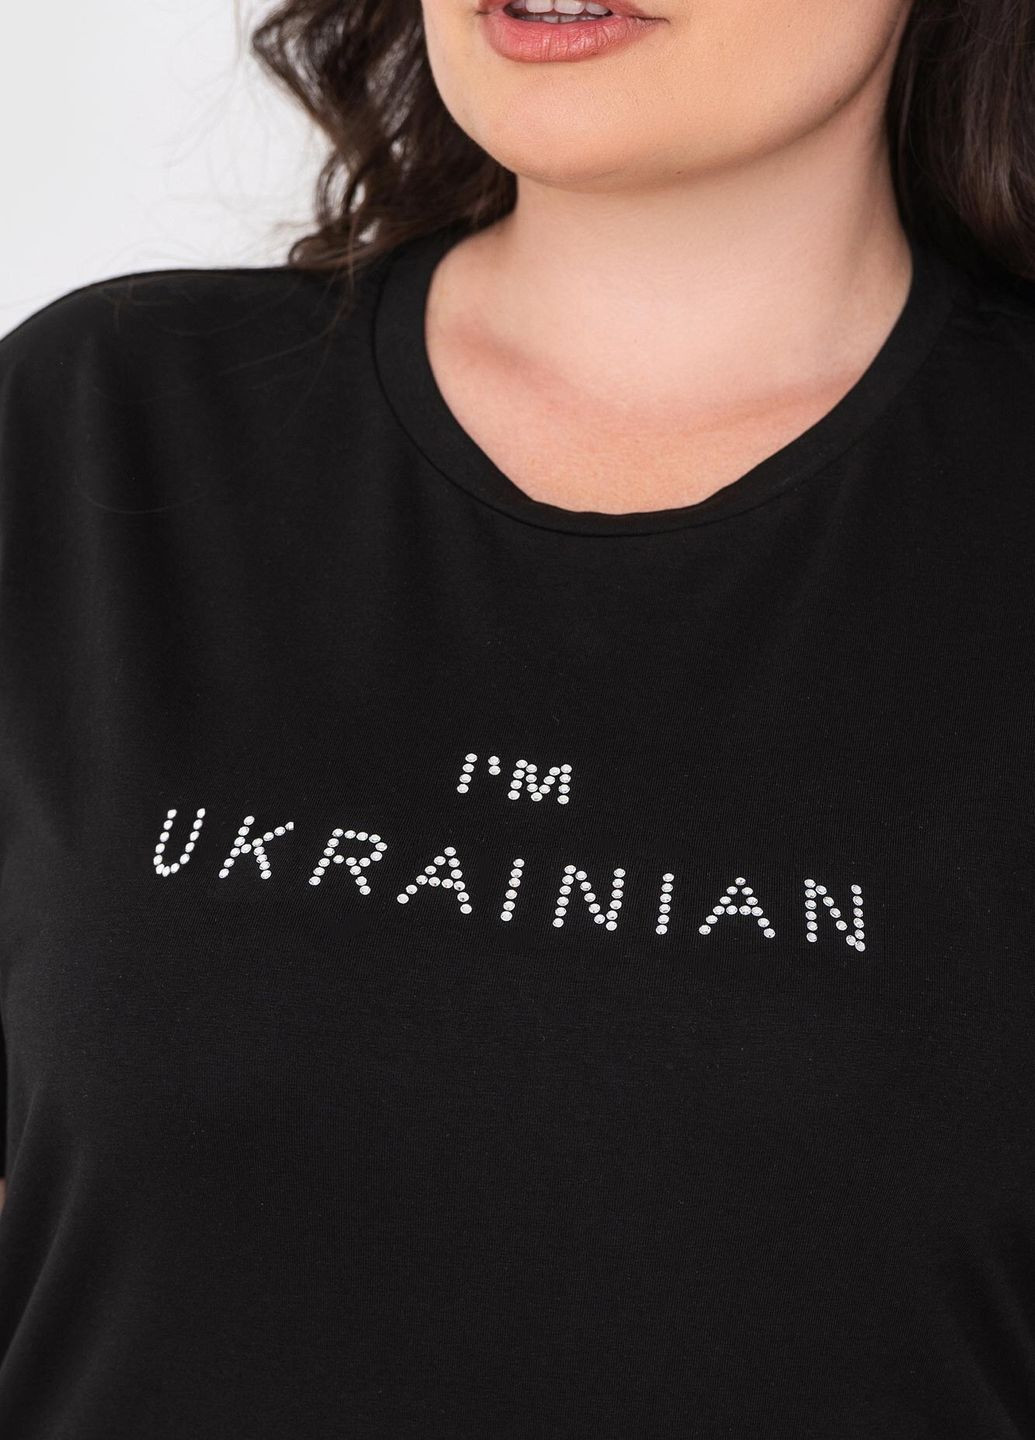 Черная всесезон футболка i'm ukrainian с коротким рукавом Garne